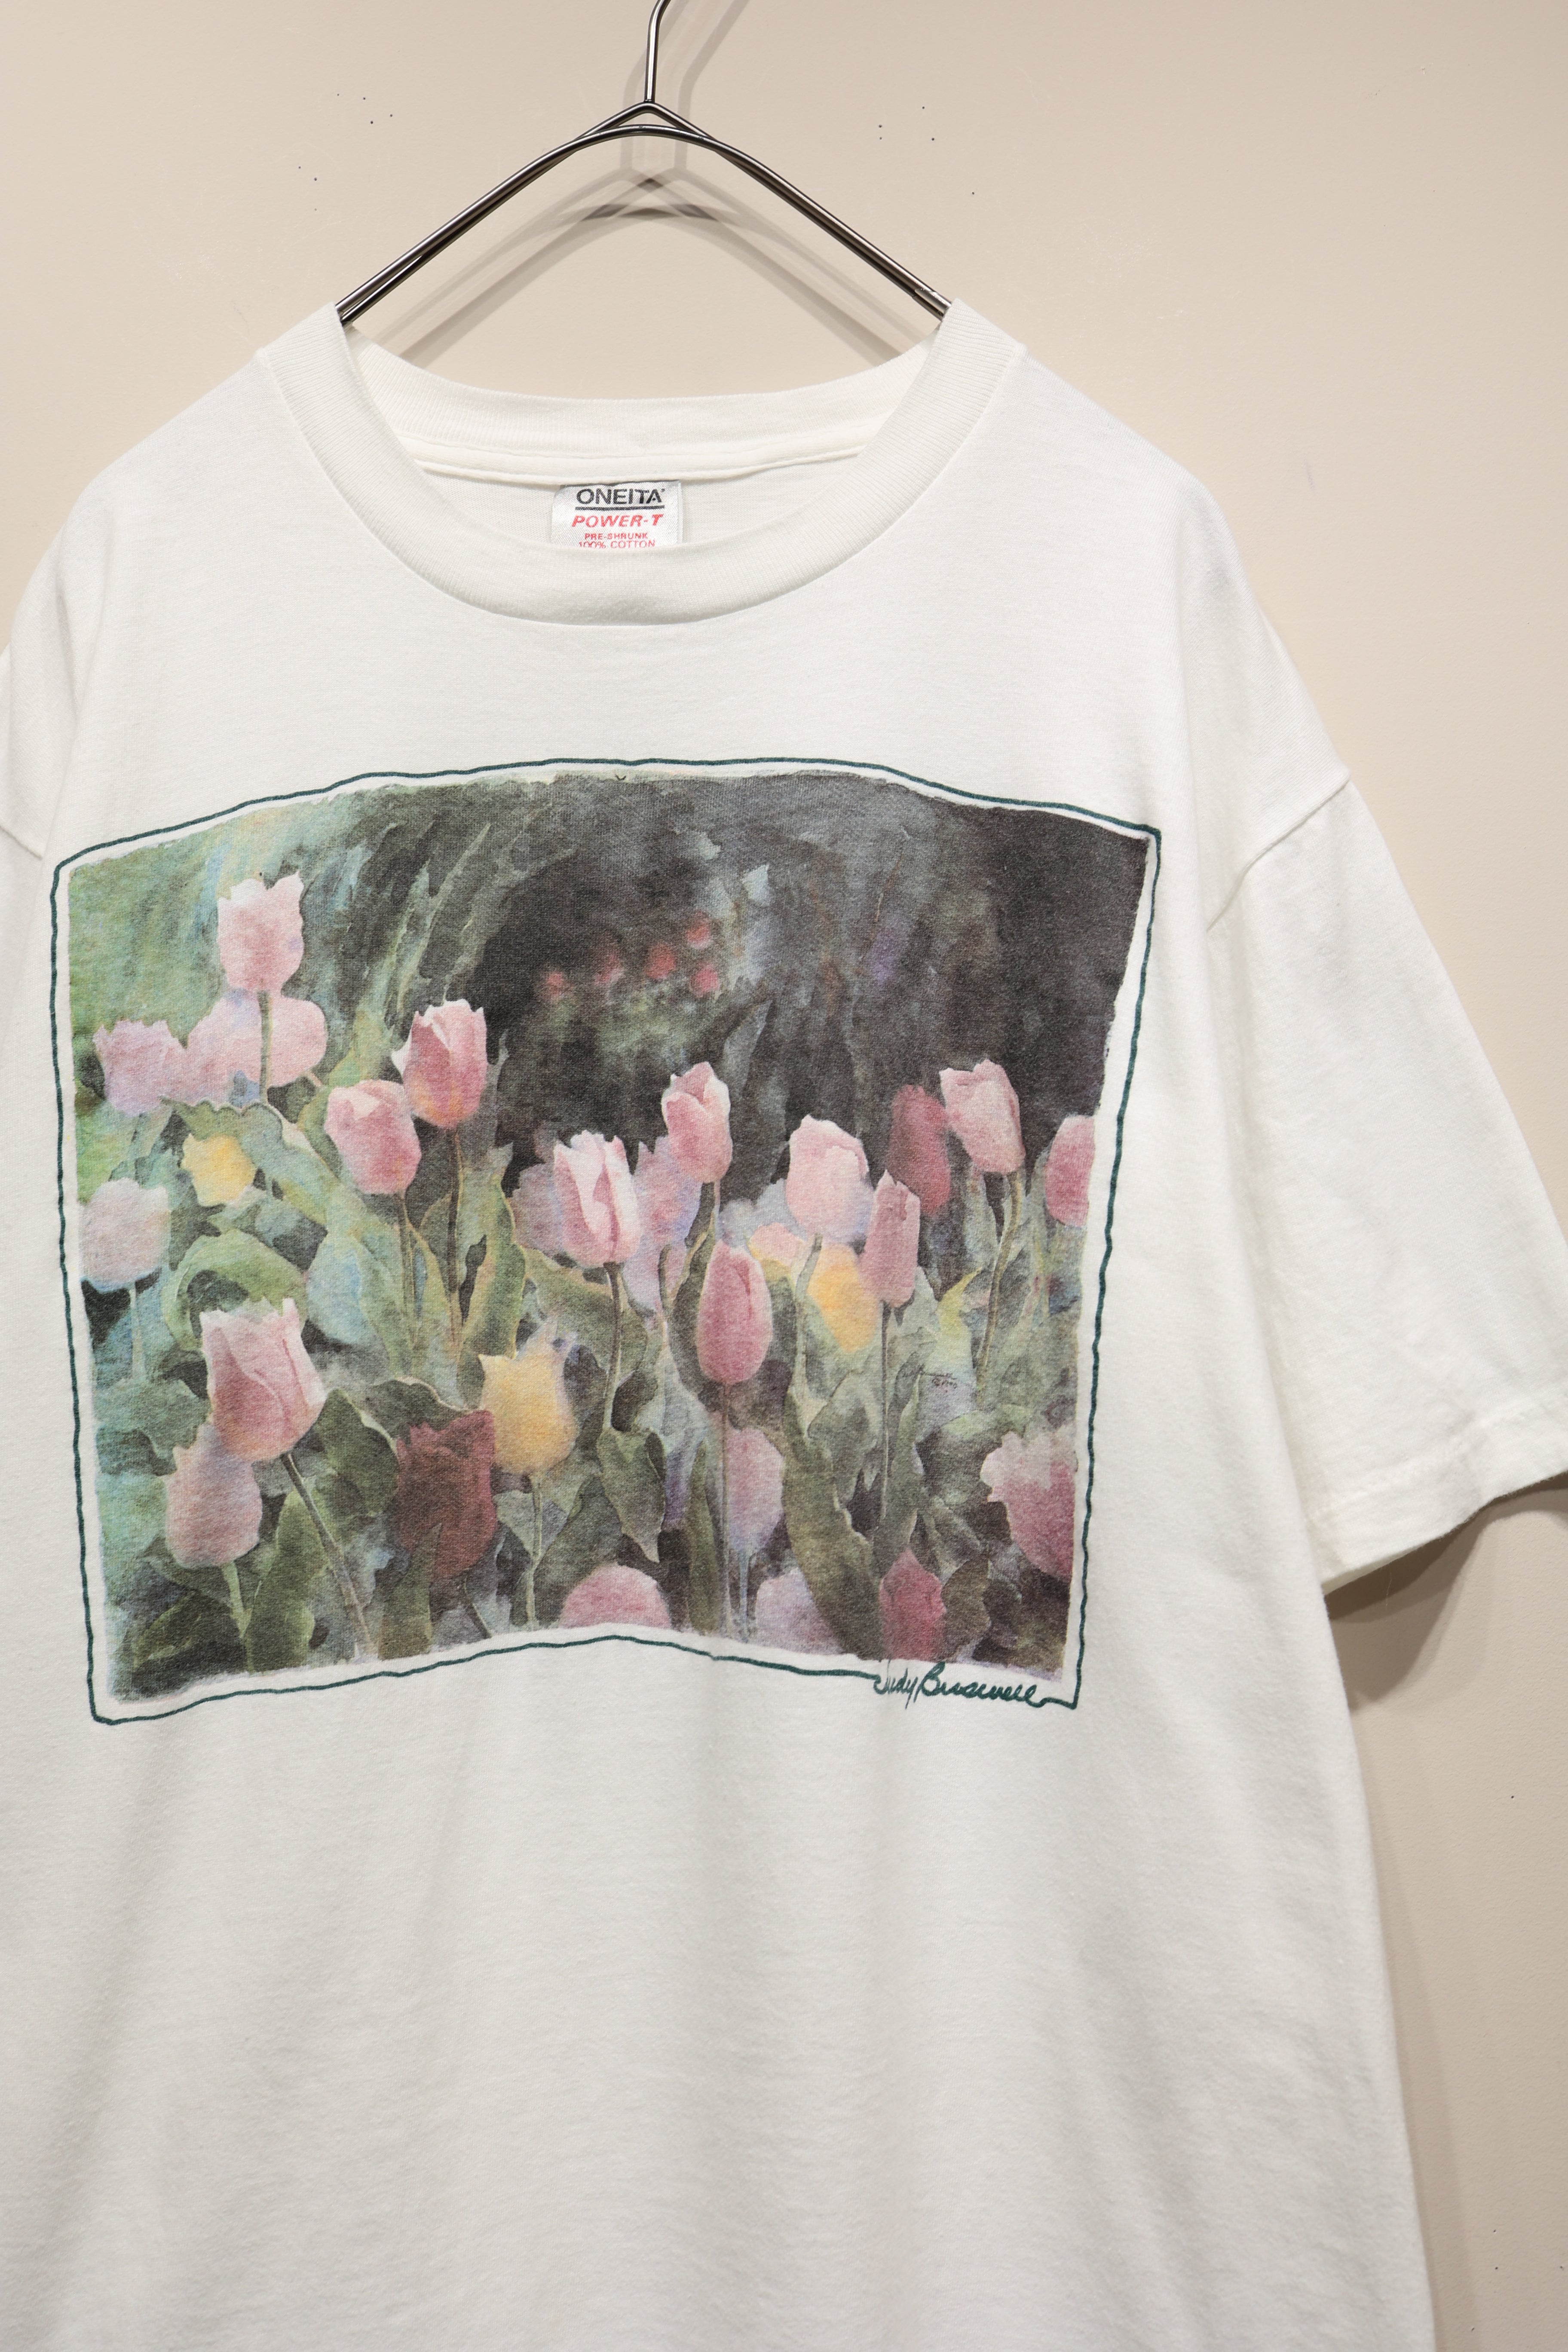 90’s print t-shirt